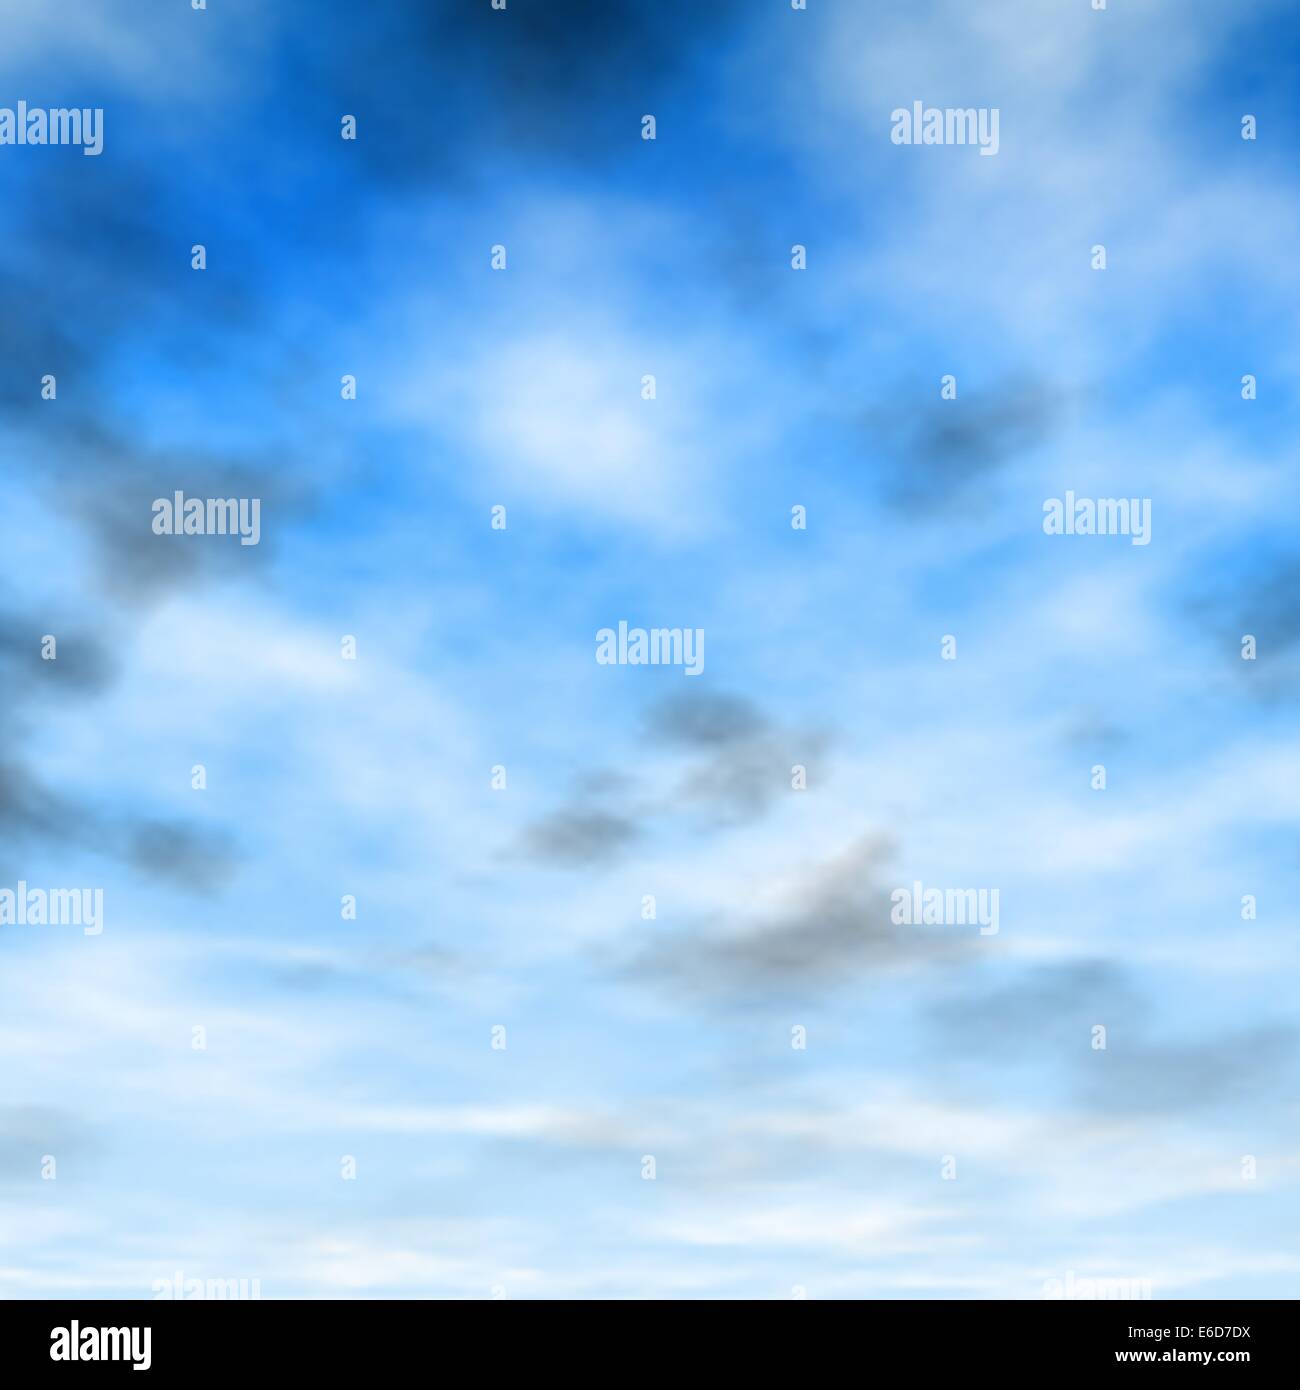 Ilustración vectorial editable de nubes blancas y grises en un cielo azul hecha con una malla de degradado Ilustración del Vector